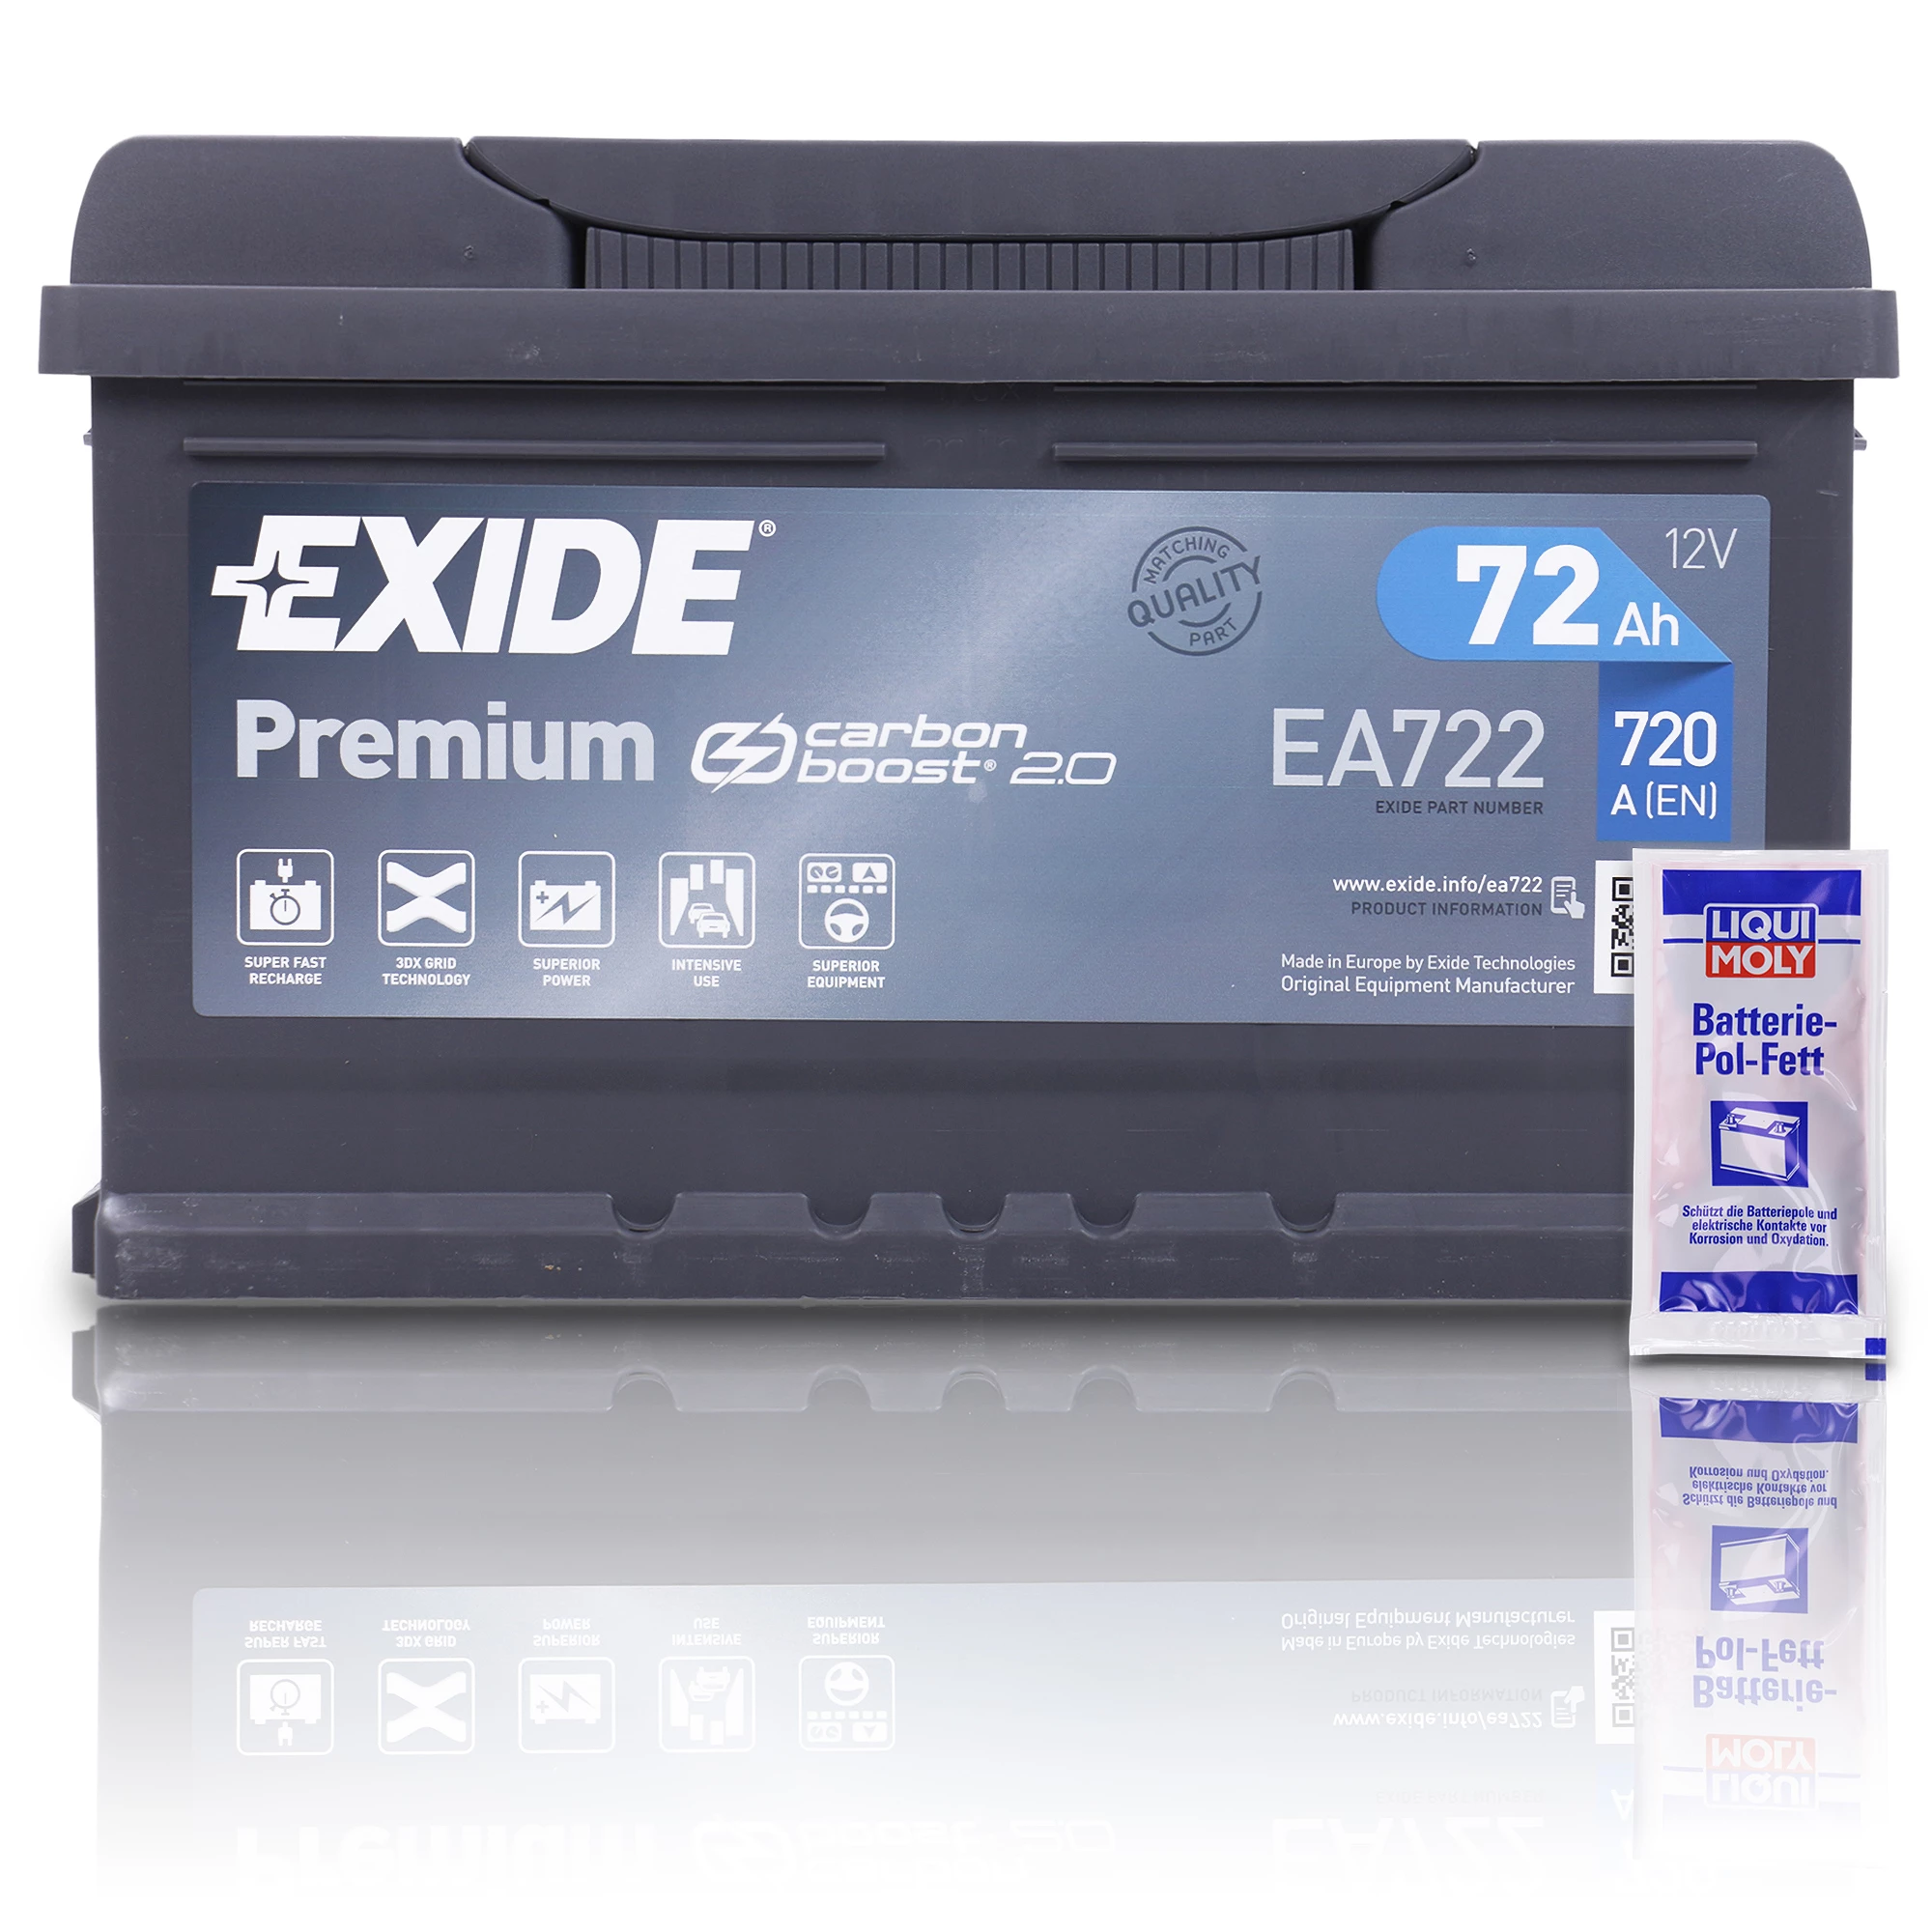 EXIDE EA722 Premium Carbon Boost 72Ah 720A+10g Pol-Fett EA722